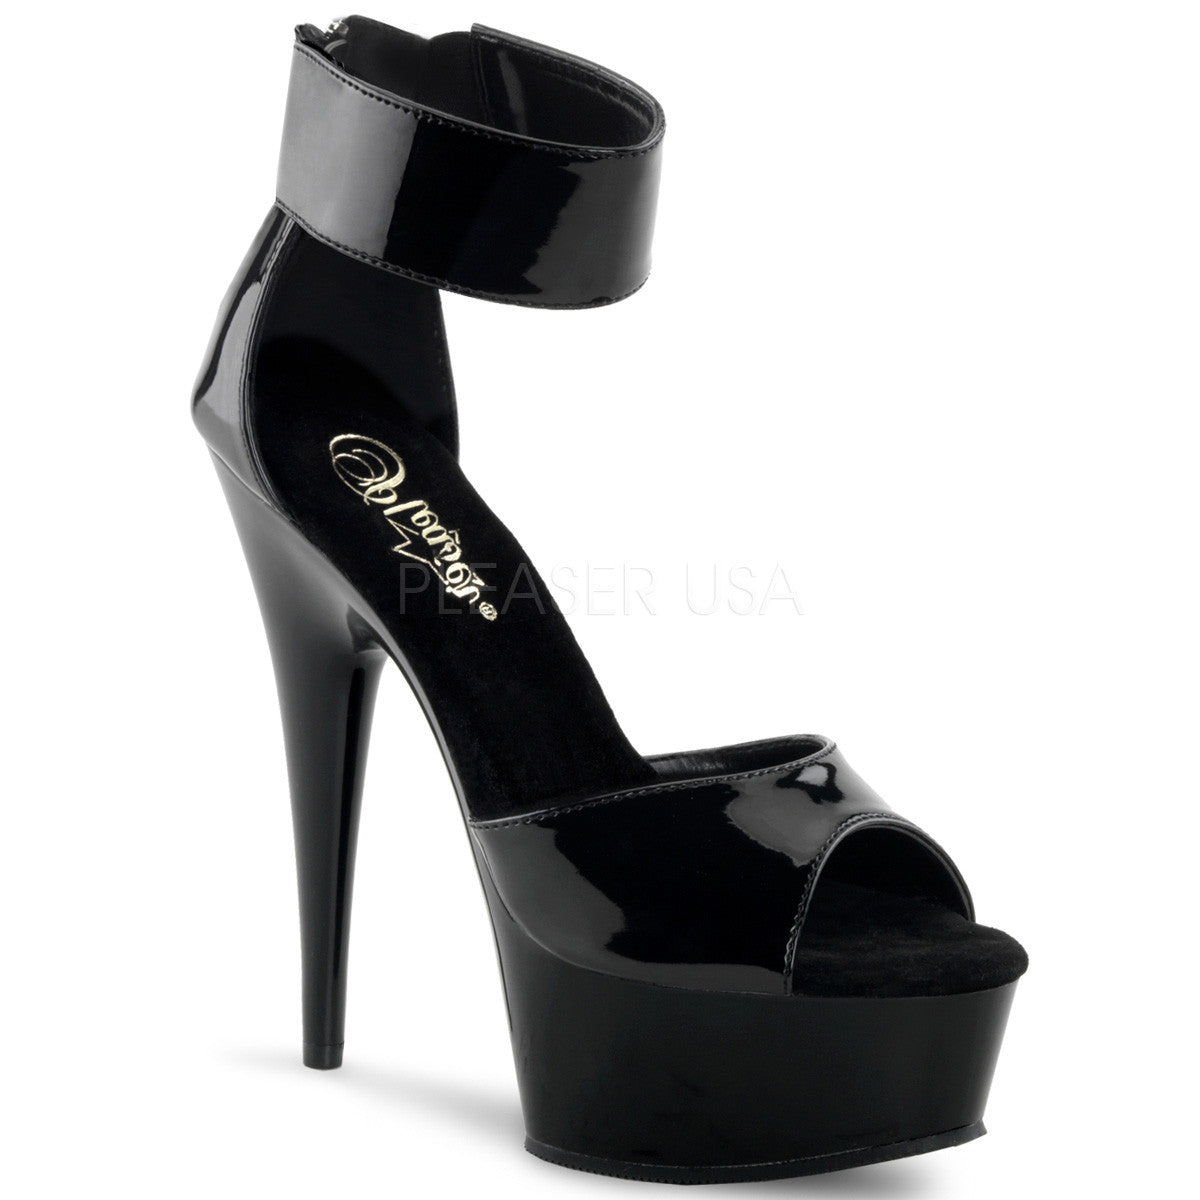 PLEASER DELIGHT-670-3 Black Sandals - Shoecup.com